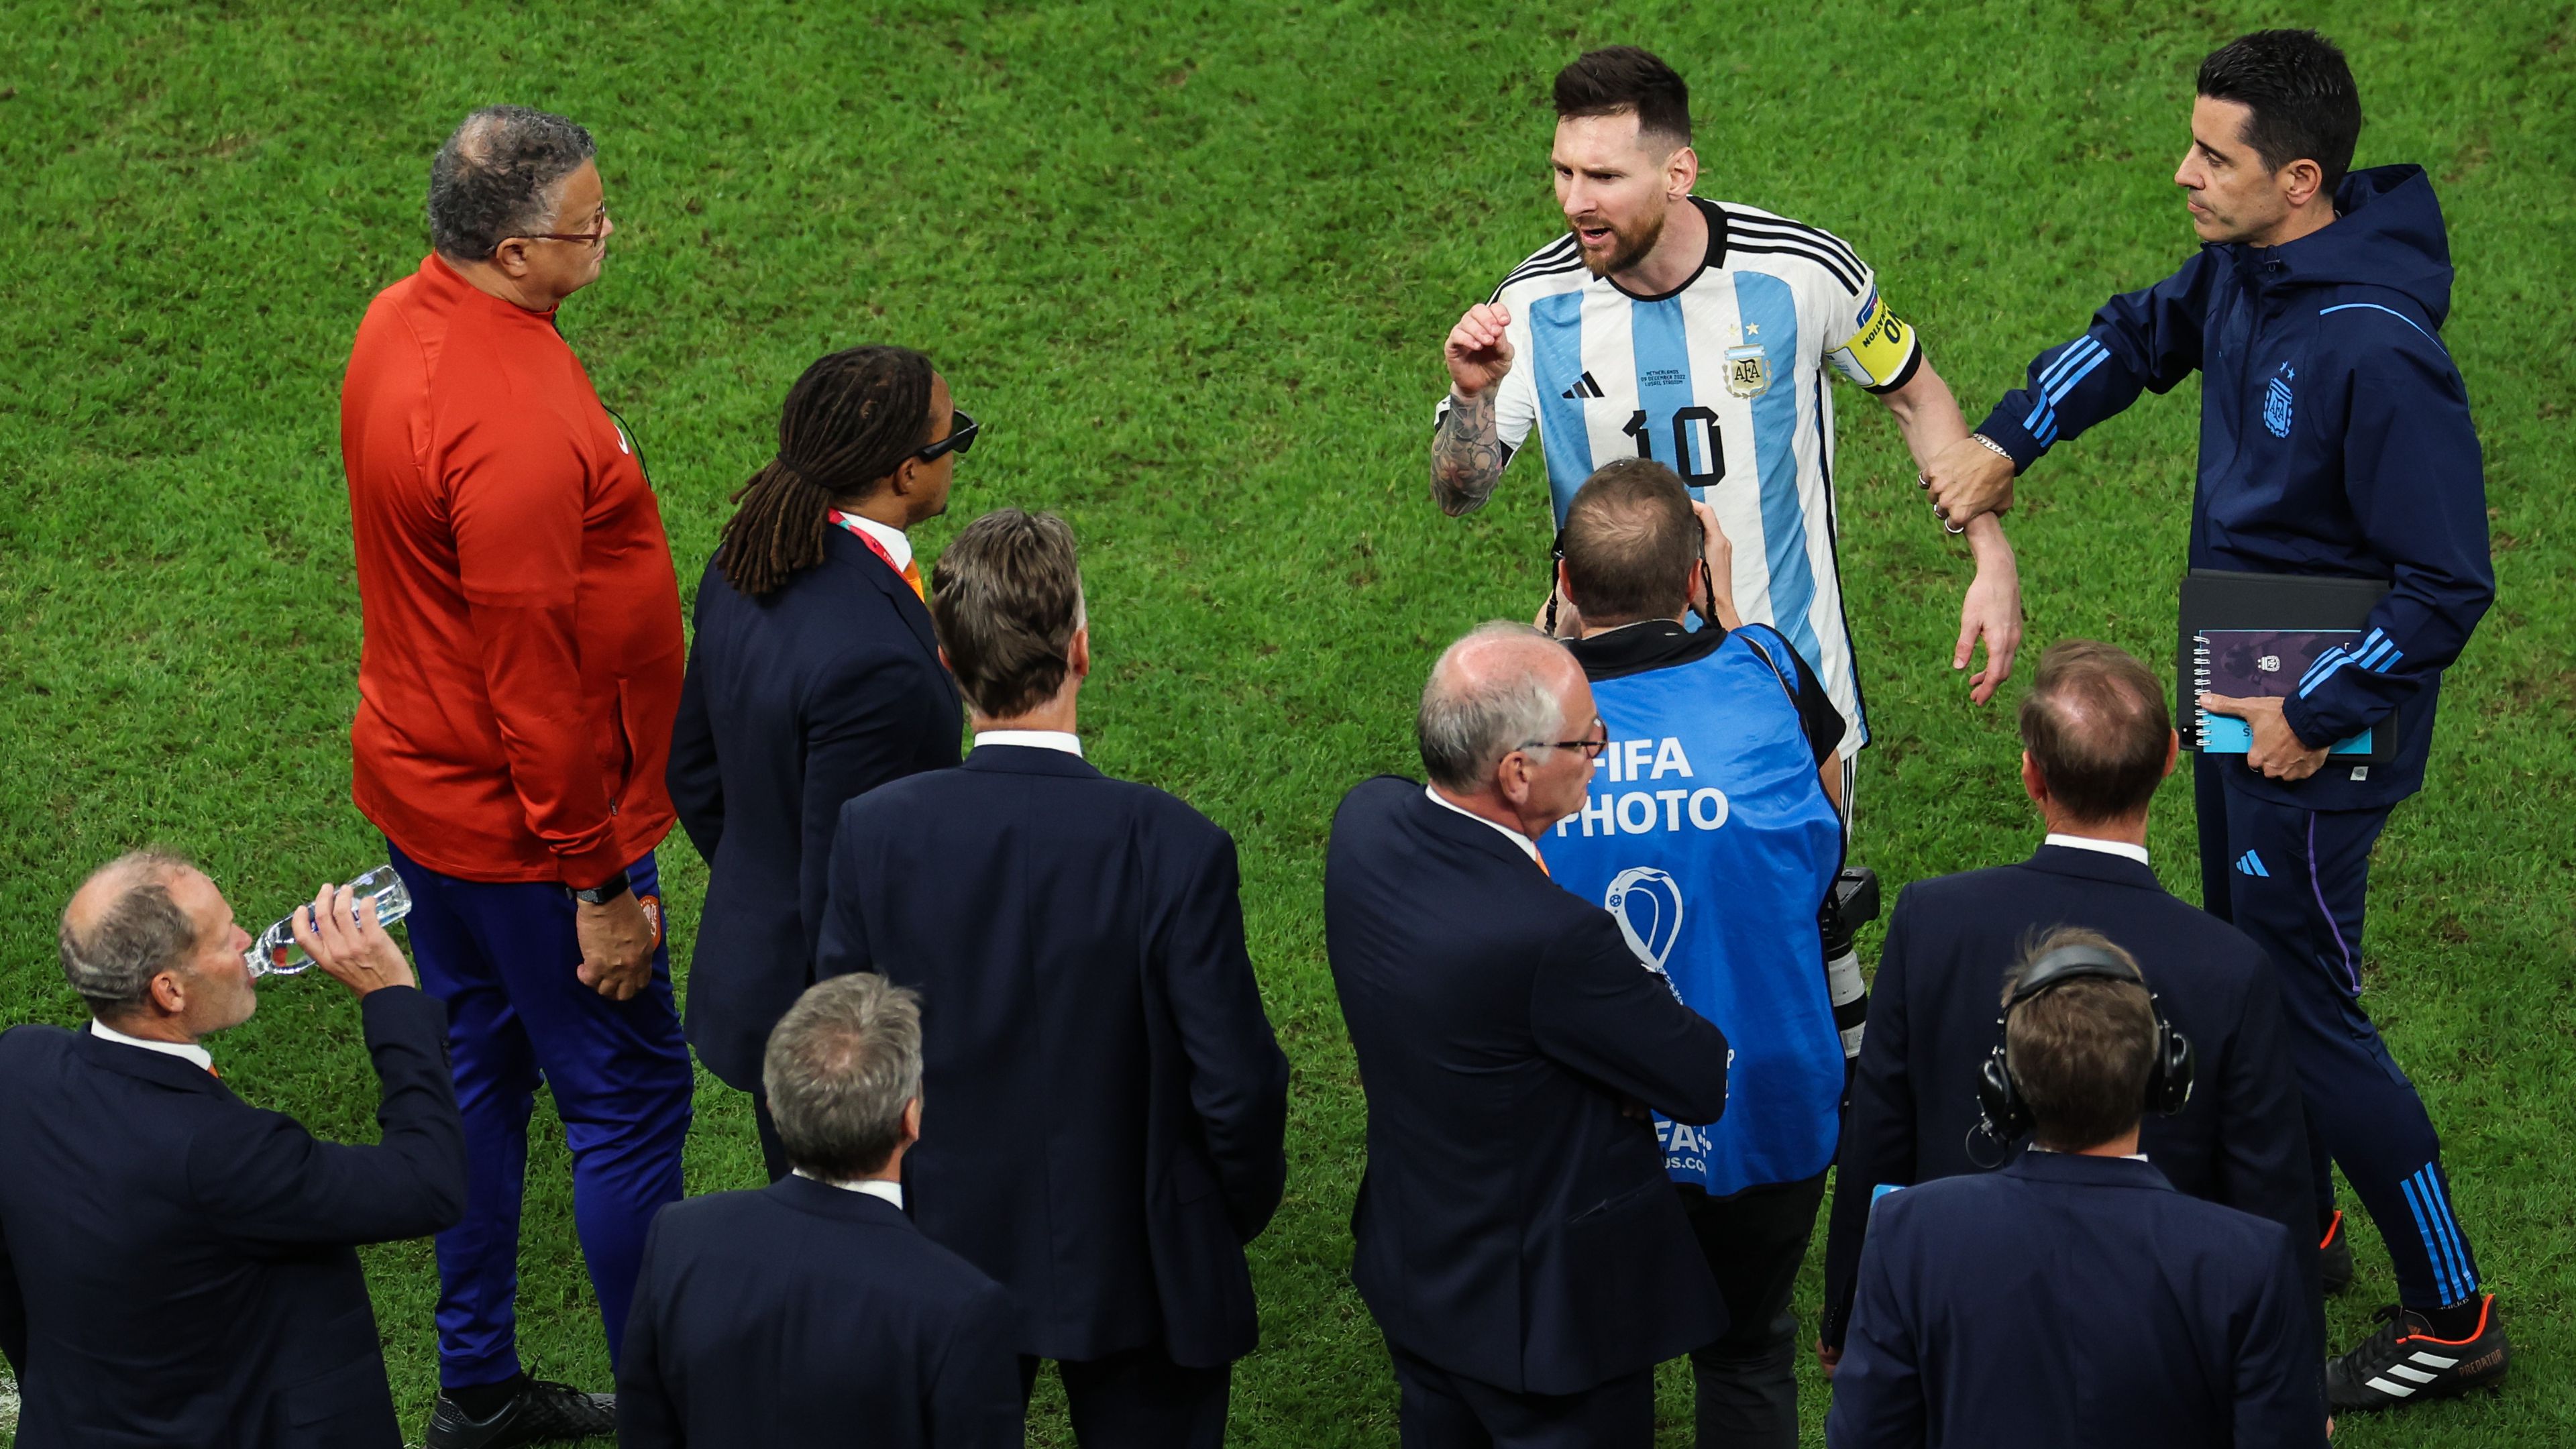 Van Gaal meredek állítása: csalással csináltak világbajnokot Messiből